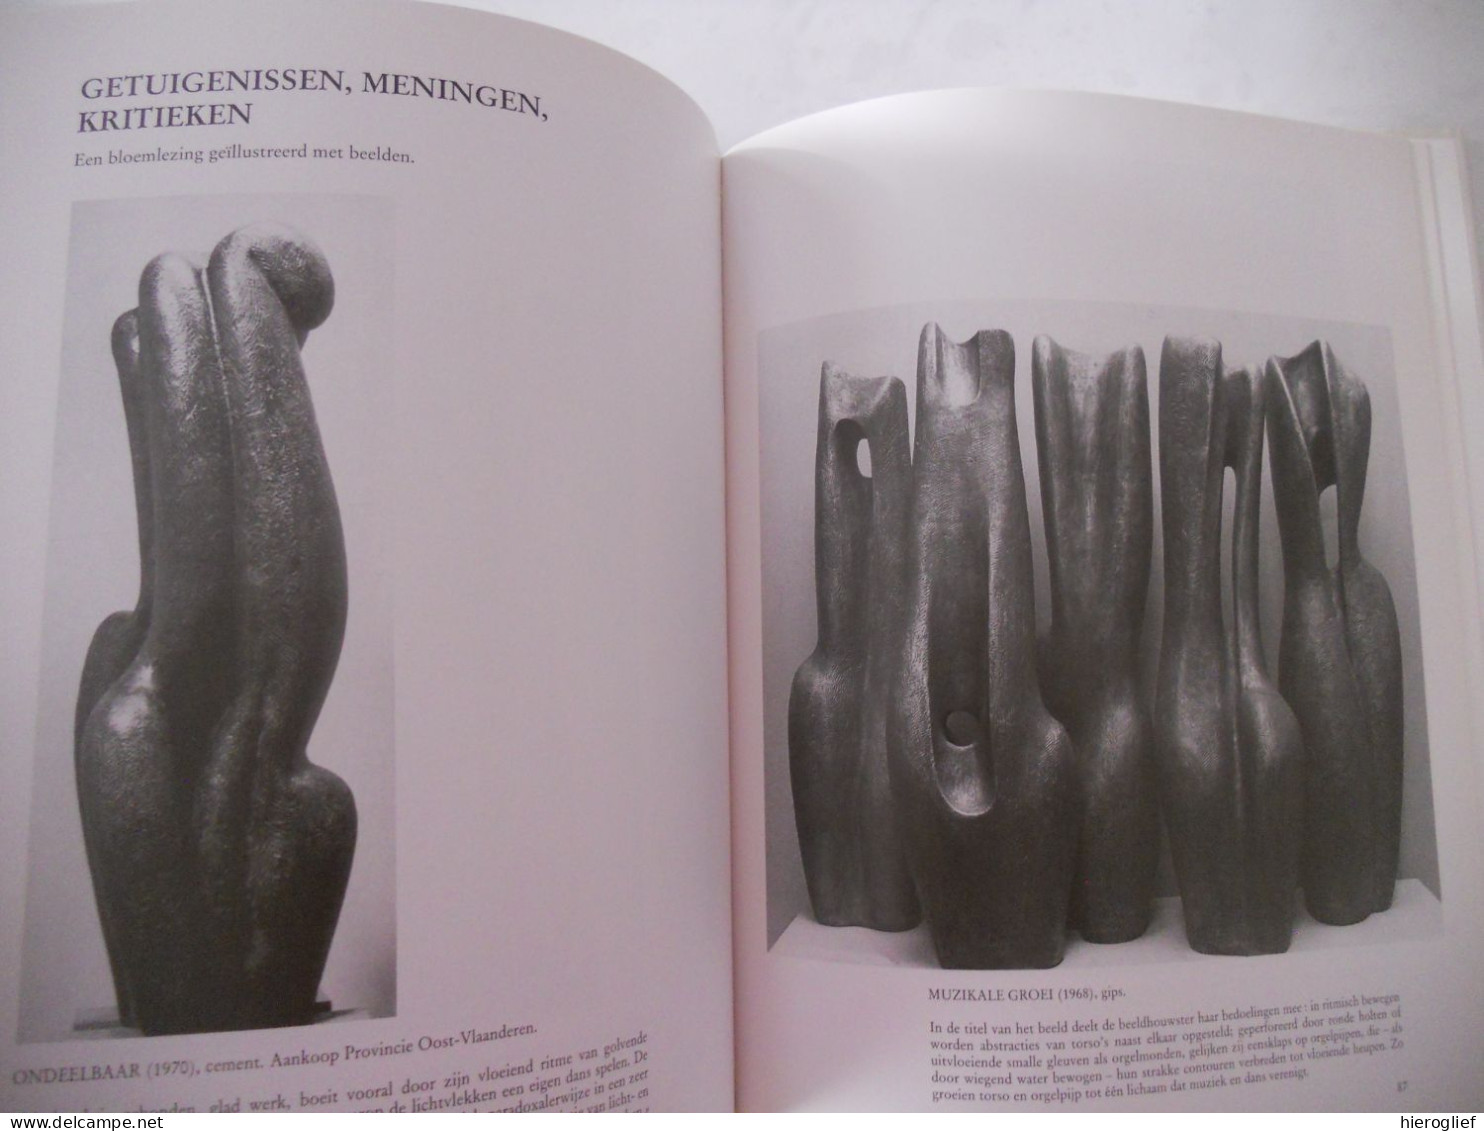 Jeanne De Dijn - sculpturen - reizen naar binnen door Harold Van De Perre ° Wichelen + Dendermonde GESIGNEERD kunst